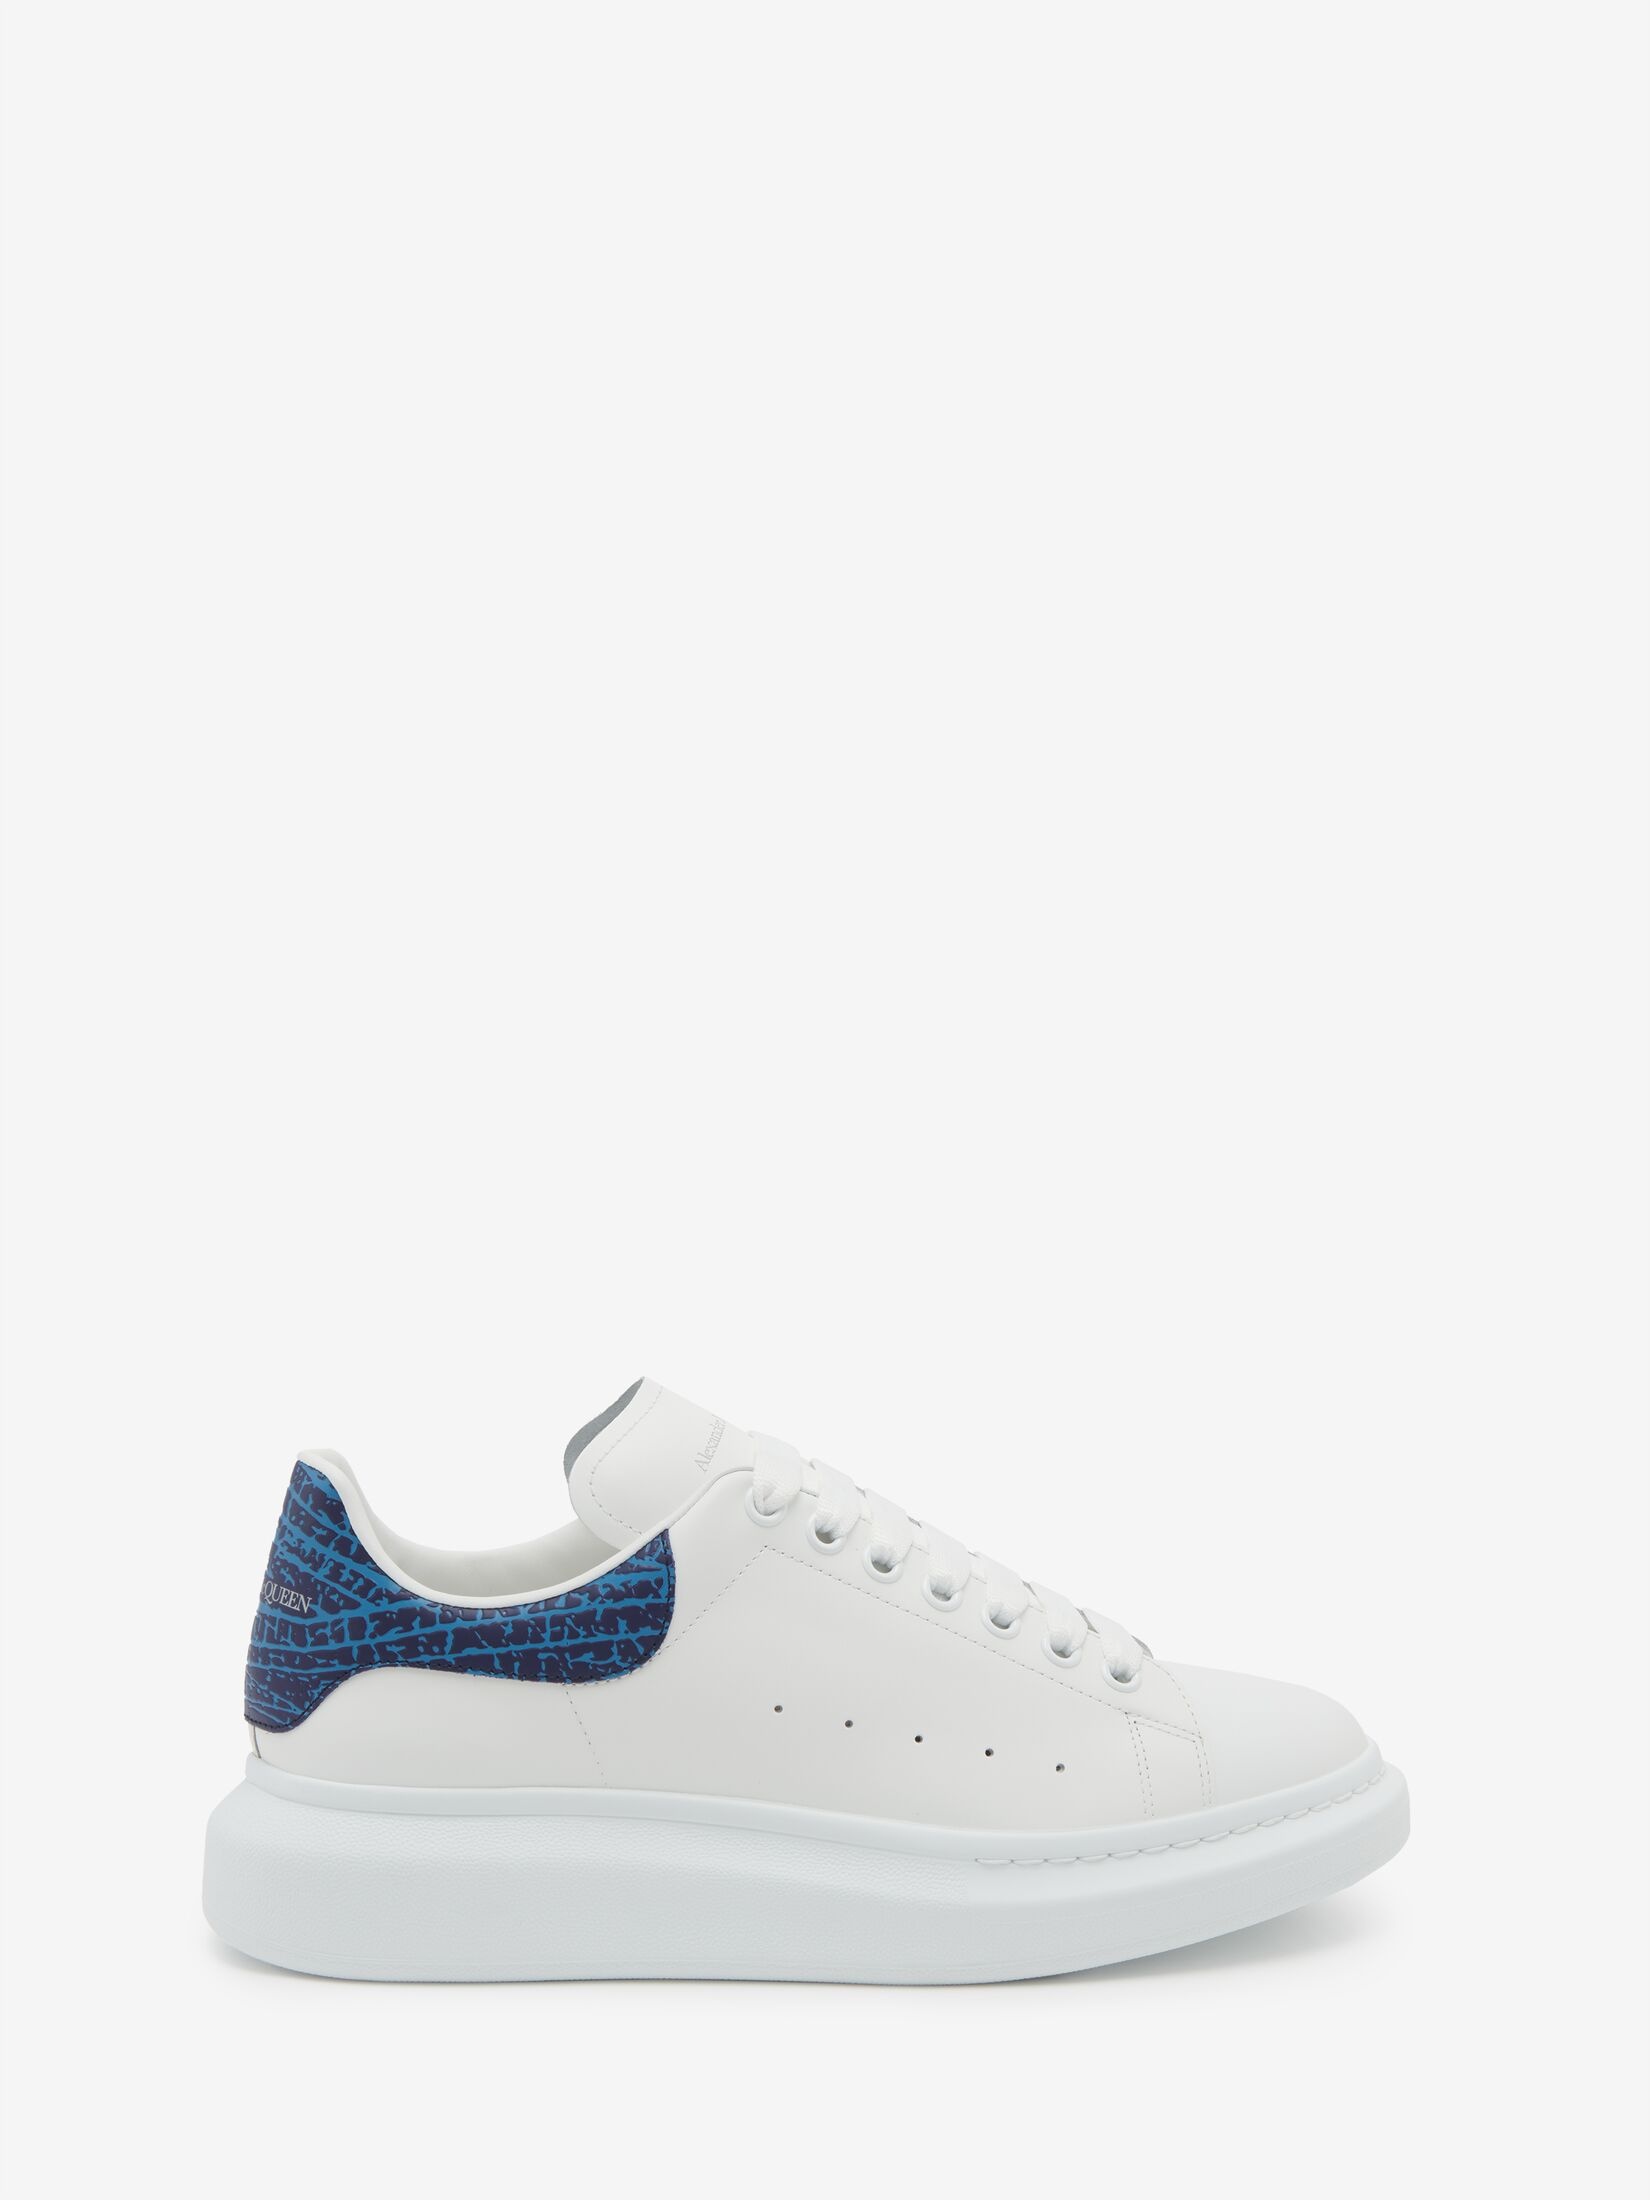 Men's Oversized Sneaker in White/lapis Blue - 1